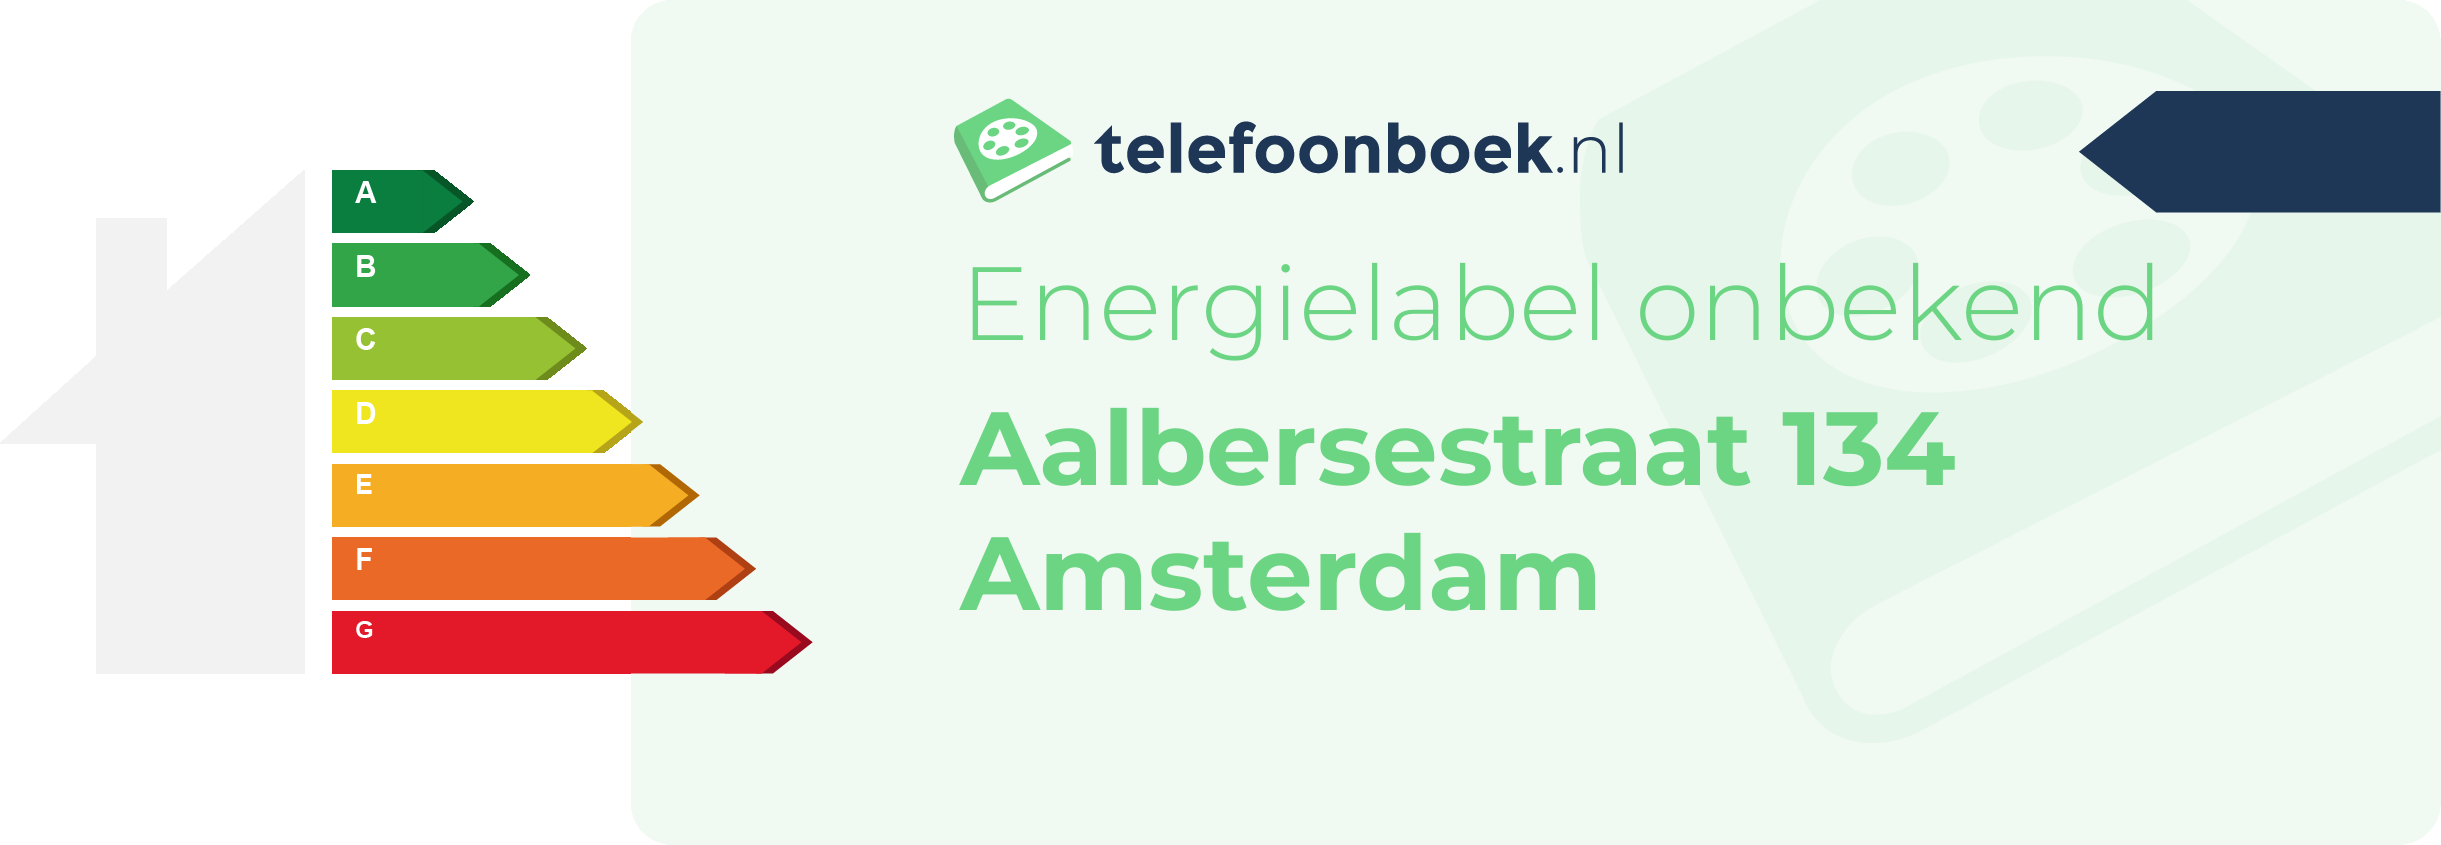 Energielabel Aalbersestraat 134 Amsterdam